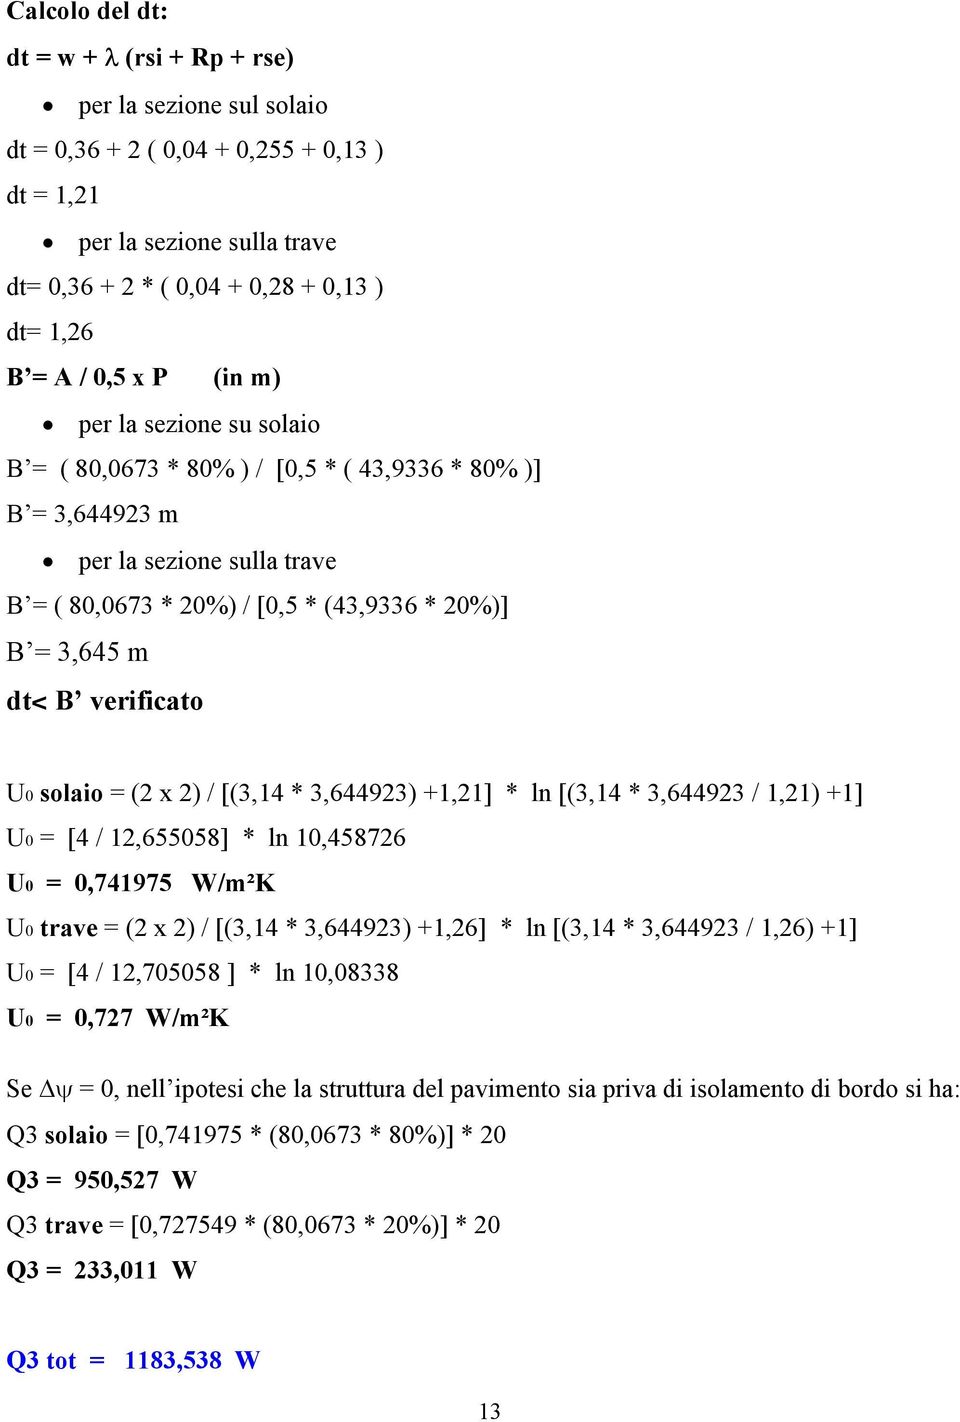 verificato U0 solaio = (2 x 2) / [(3,14 * 3,644923) +1,21] * ln [(3,14 * 3,644923 / 1,21) +1] U0 = [4 / 12,655058] * ln 10,458726 U0 = 0,741975 W/m²K U0 trave = (2 x 2) / [(3,14 * 3,644923) +1,26] *